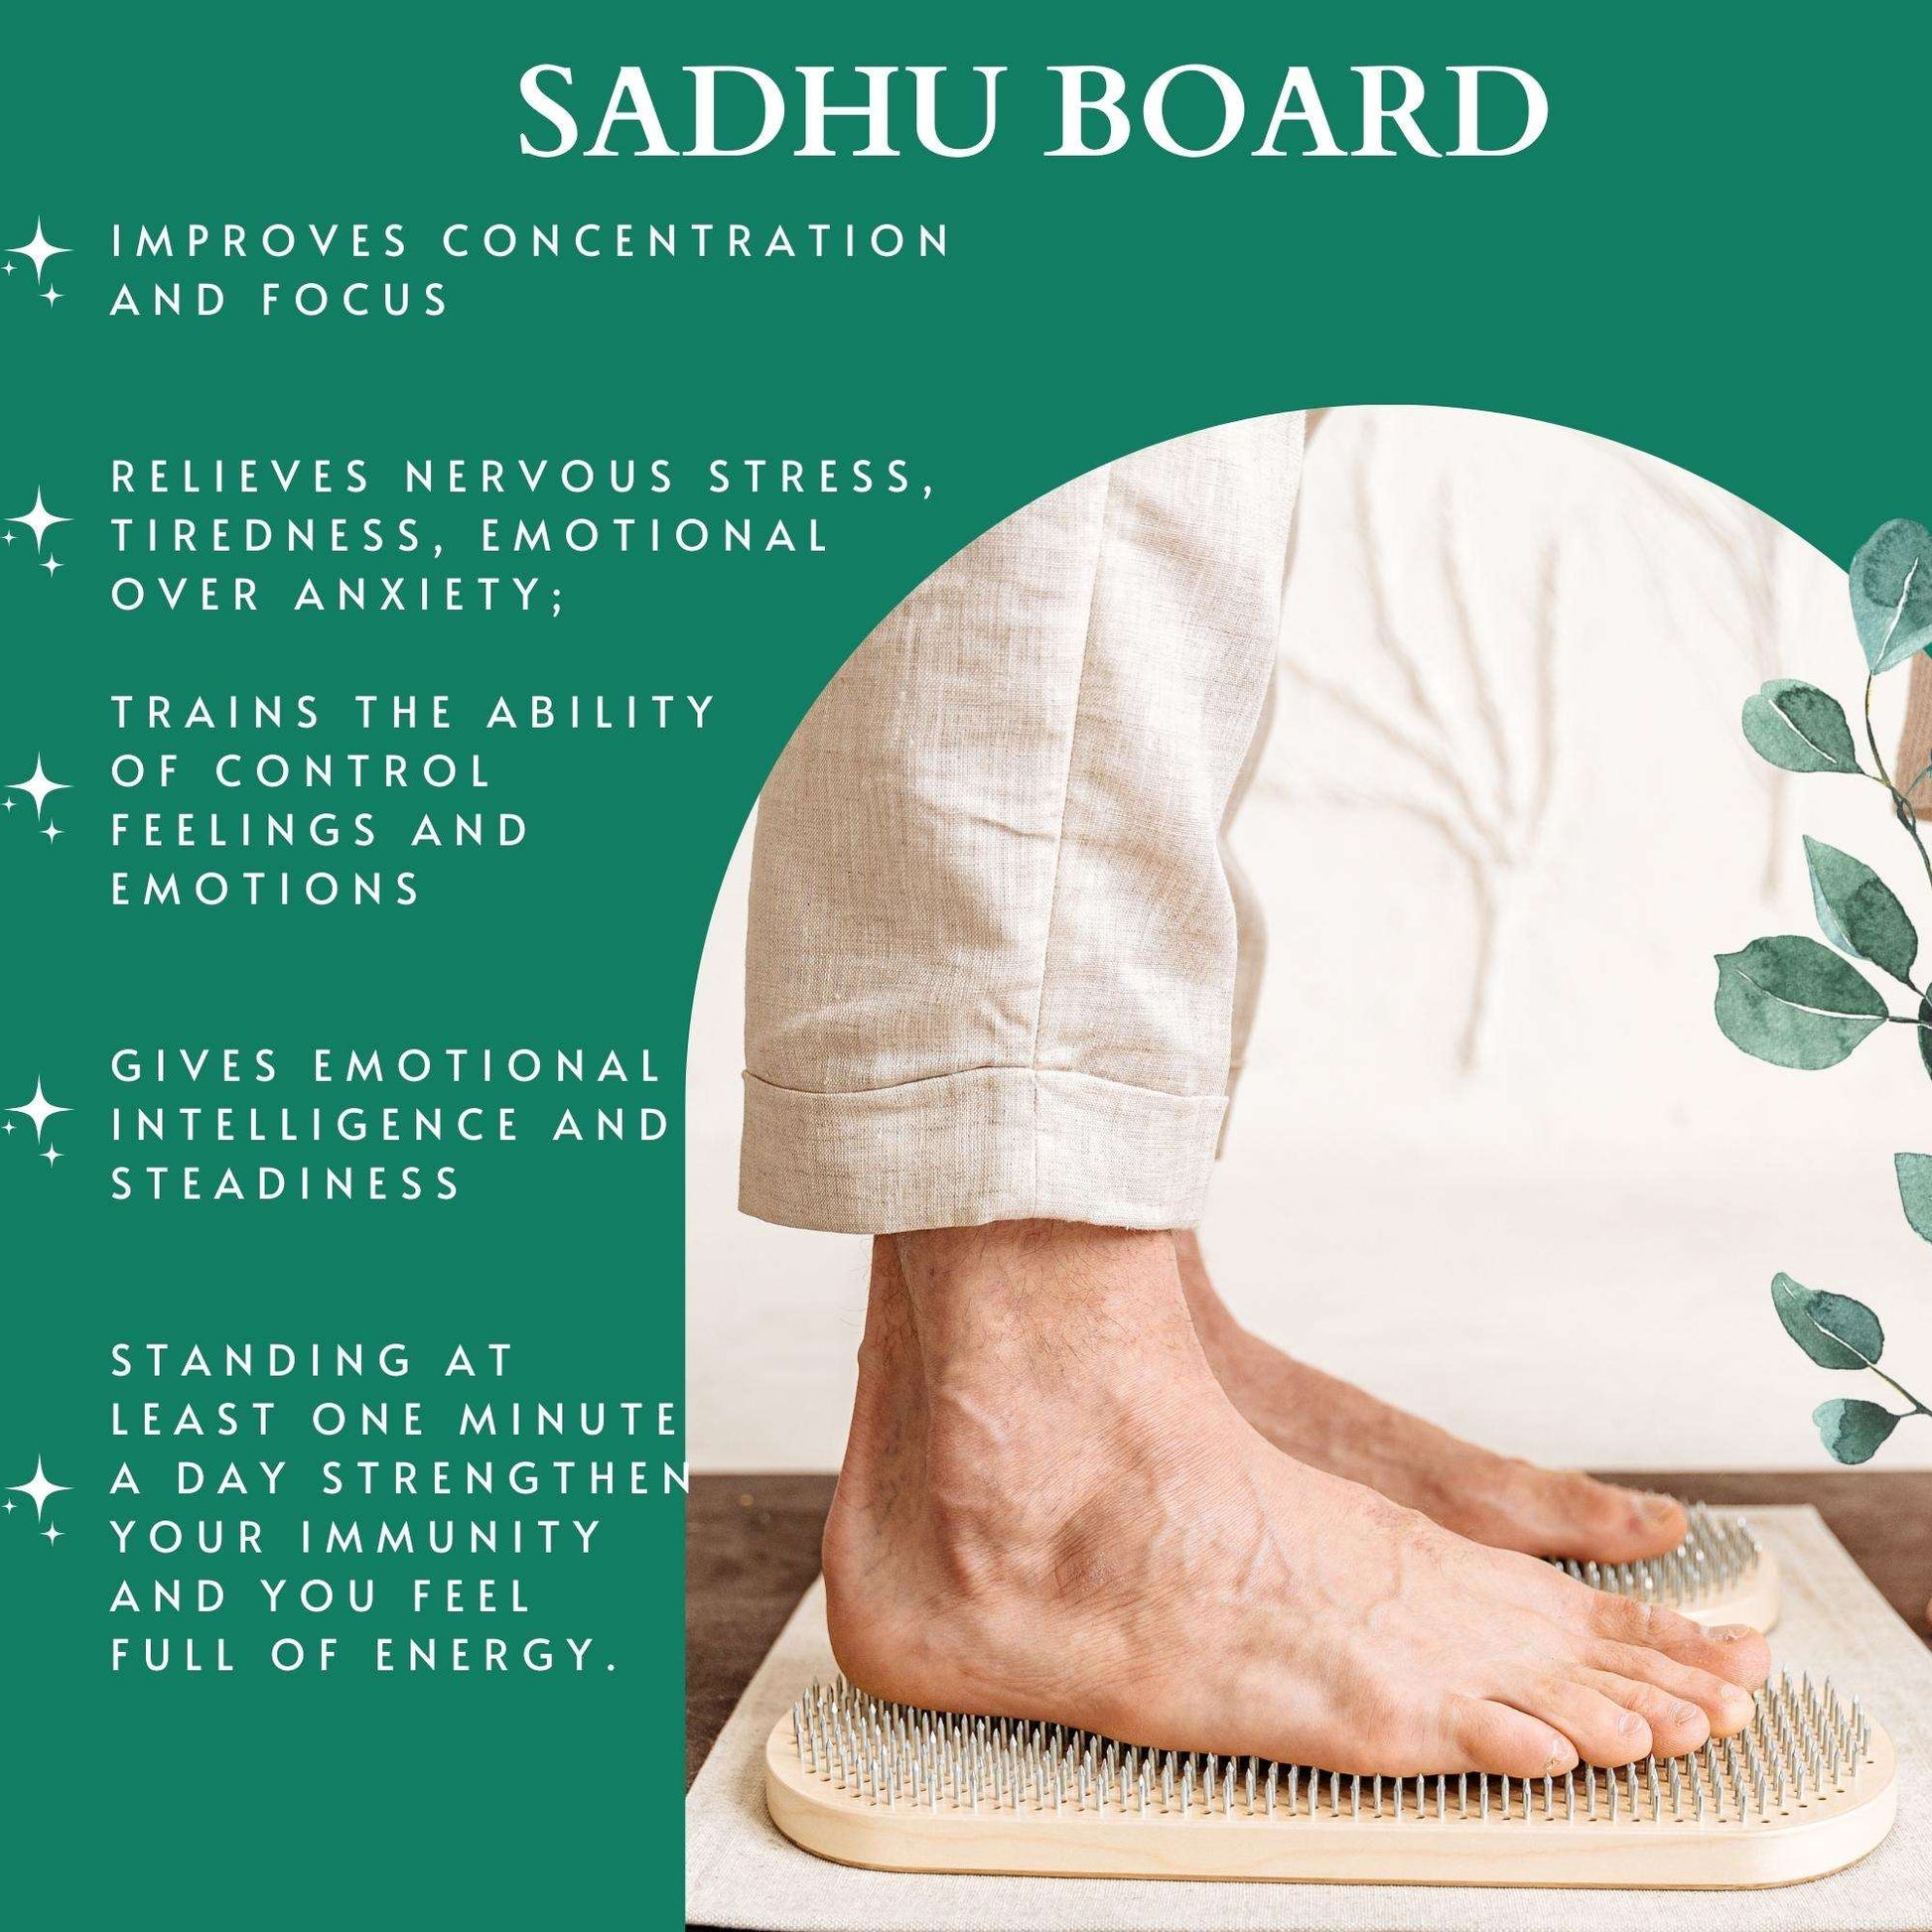 Compact Light Sadhu board, Balance board, Yoga board, Nails board 0.4 in (10 mm)